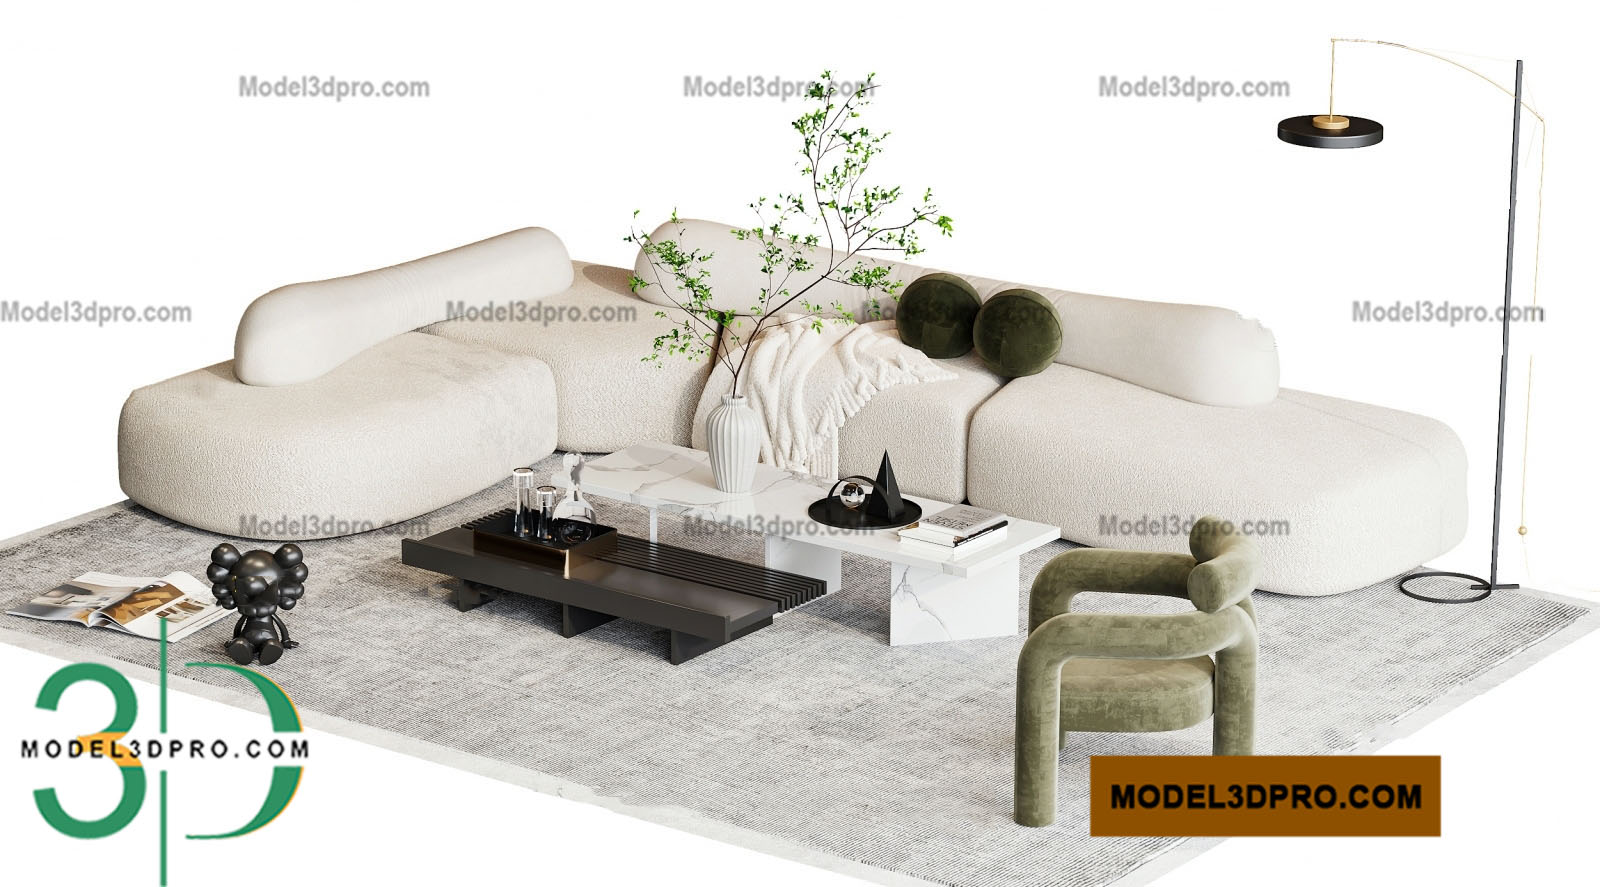 Sofa Free 3D Models download